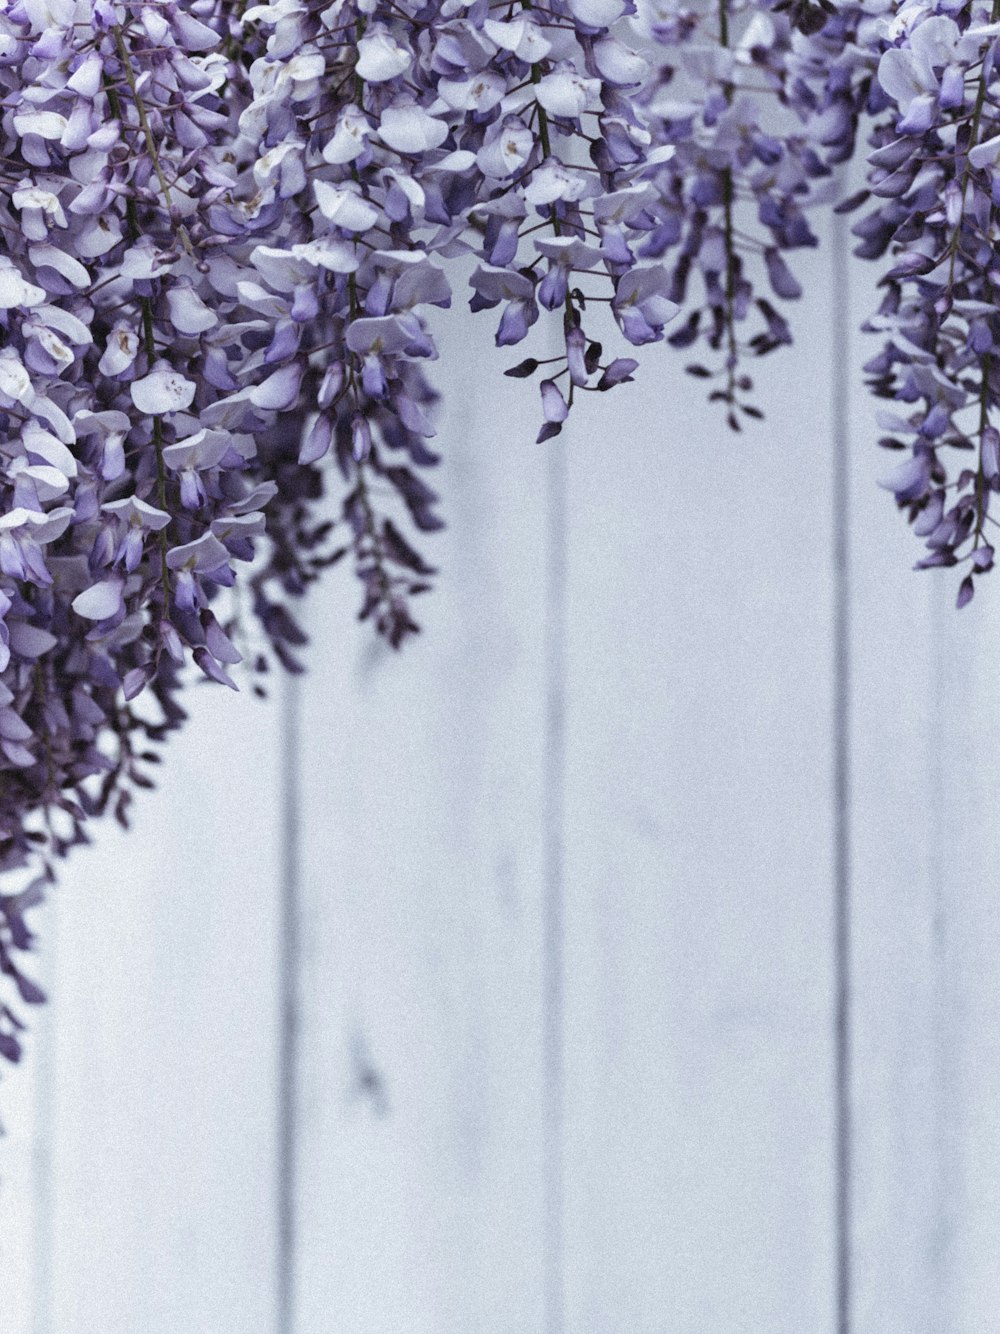 灰色の木製の柵に紫と白の花